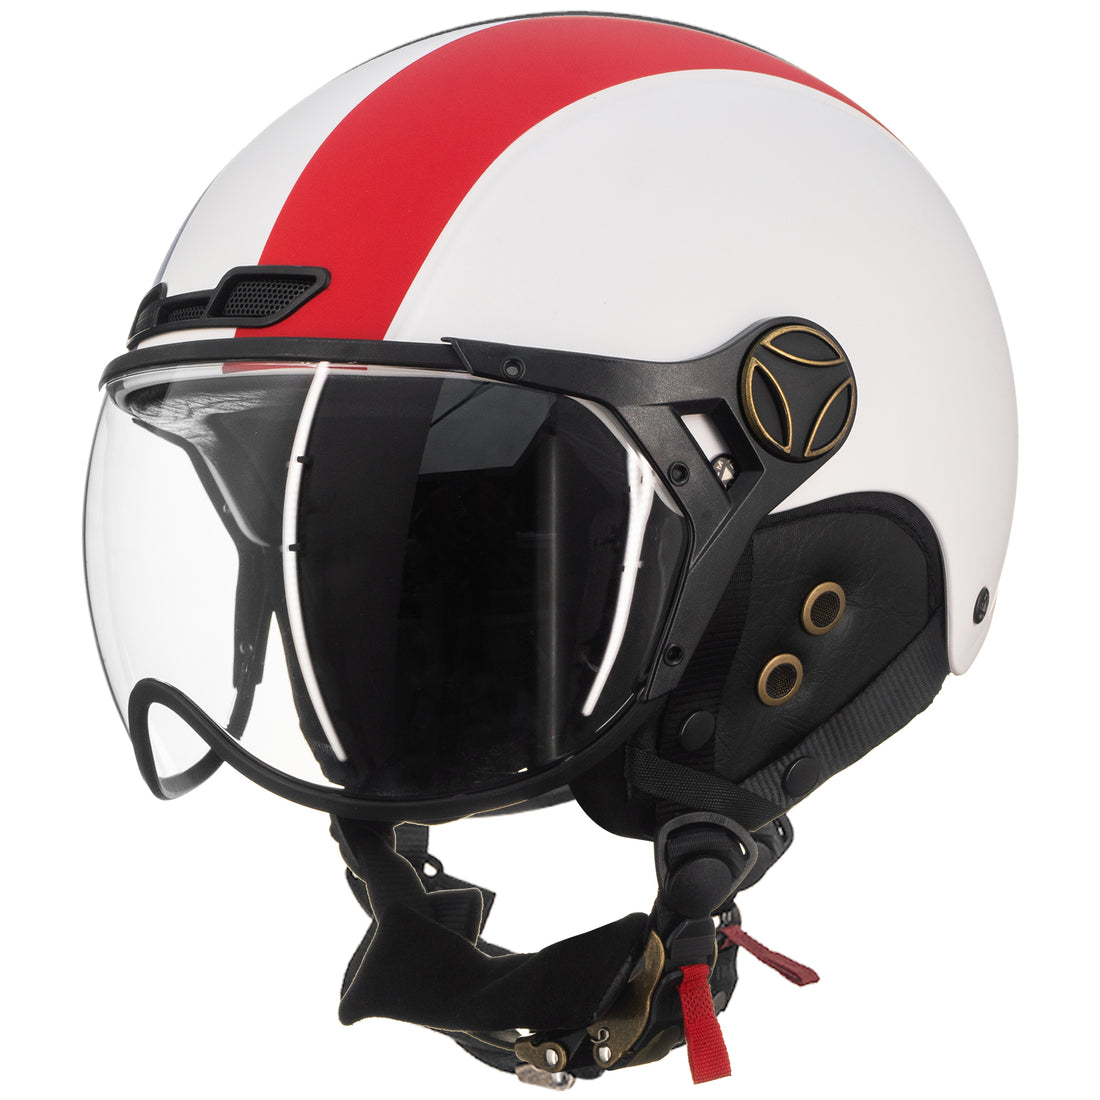 ILM Bike Helmet Model Z102 White